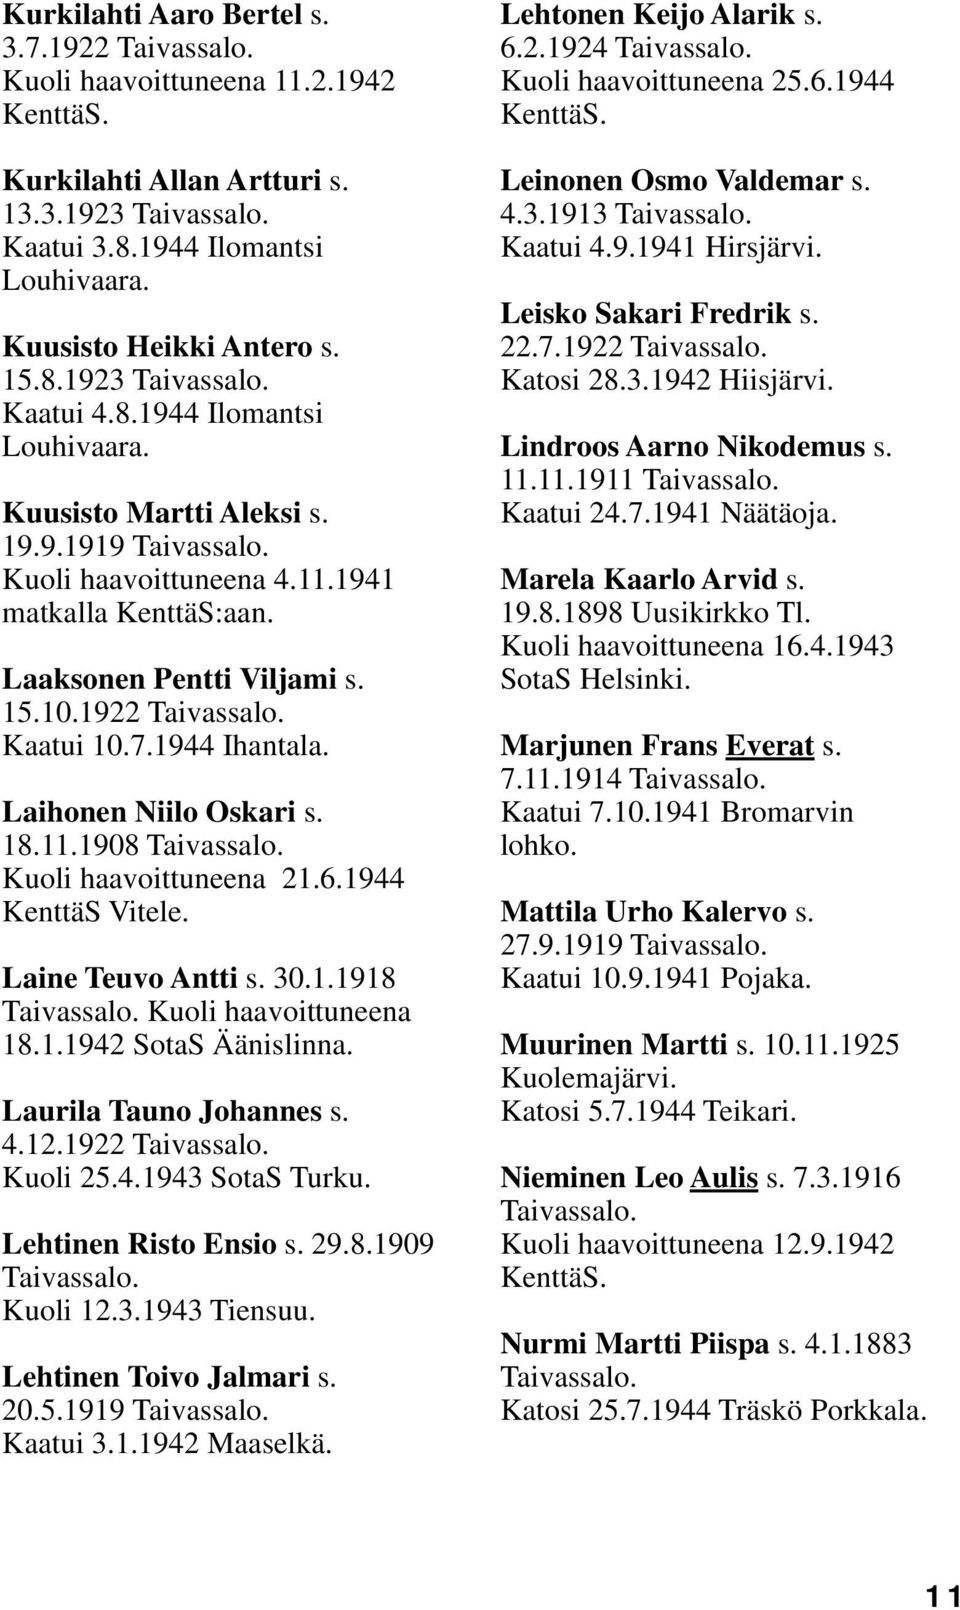 1944 KenttäS Vitele. Laine Teuvo Antti s. 30.1.1918 Kuoli haavoittuneena 18.1.1942 SotaS Äänislinna. Laurila Tauno Johannes s. 4.12.1922 Kuoli 25.4.1943 SotaS Turku. Lehtinen Risto Ensio s. 29.8.1909 Kuoli 12.